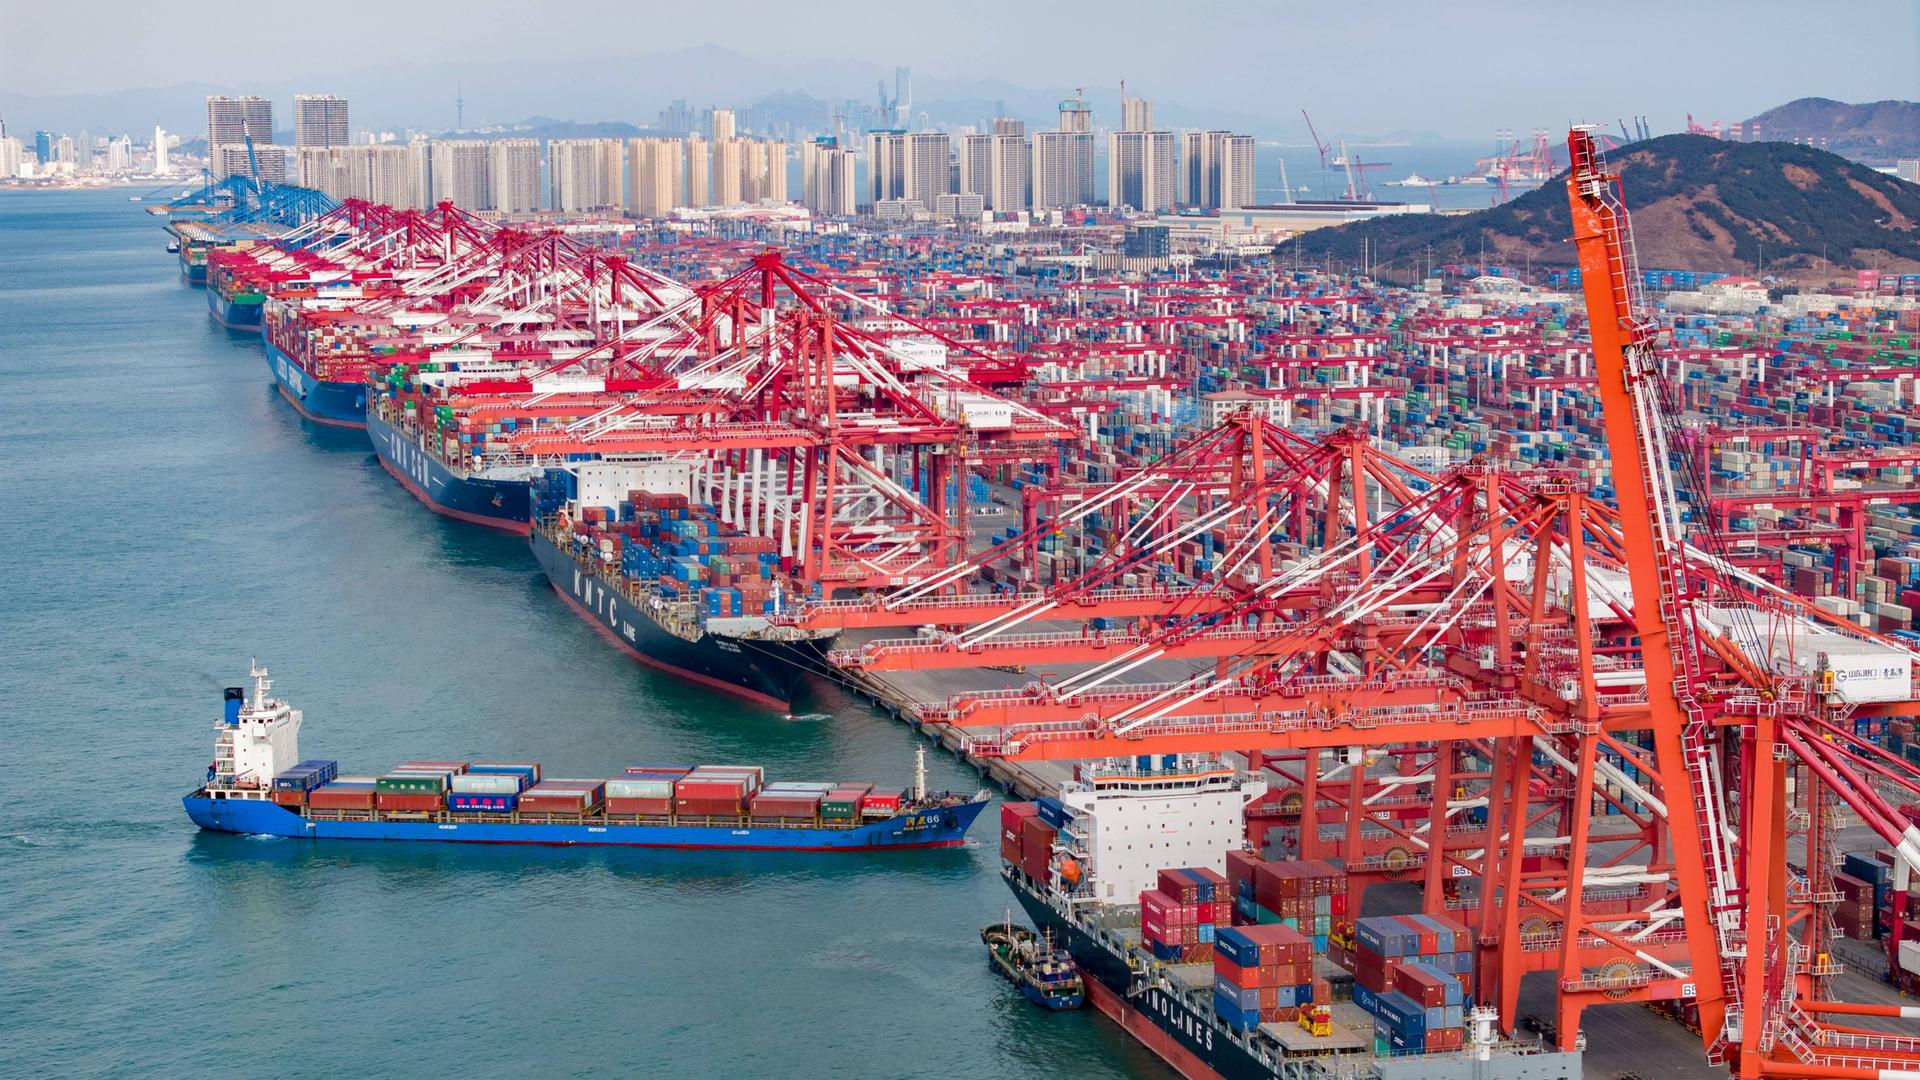 Blick auf den Qianwan Container Terminal des Hafens Qingdao in der Provinz Shandong in China. Container werden be- und entladen.